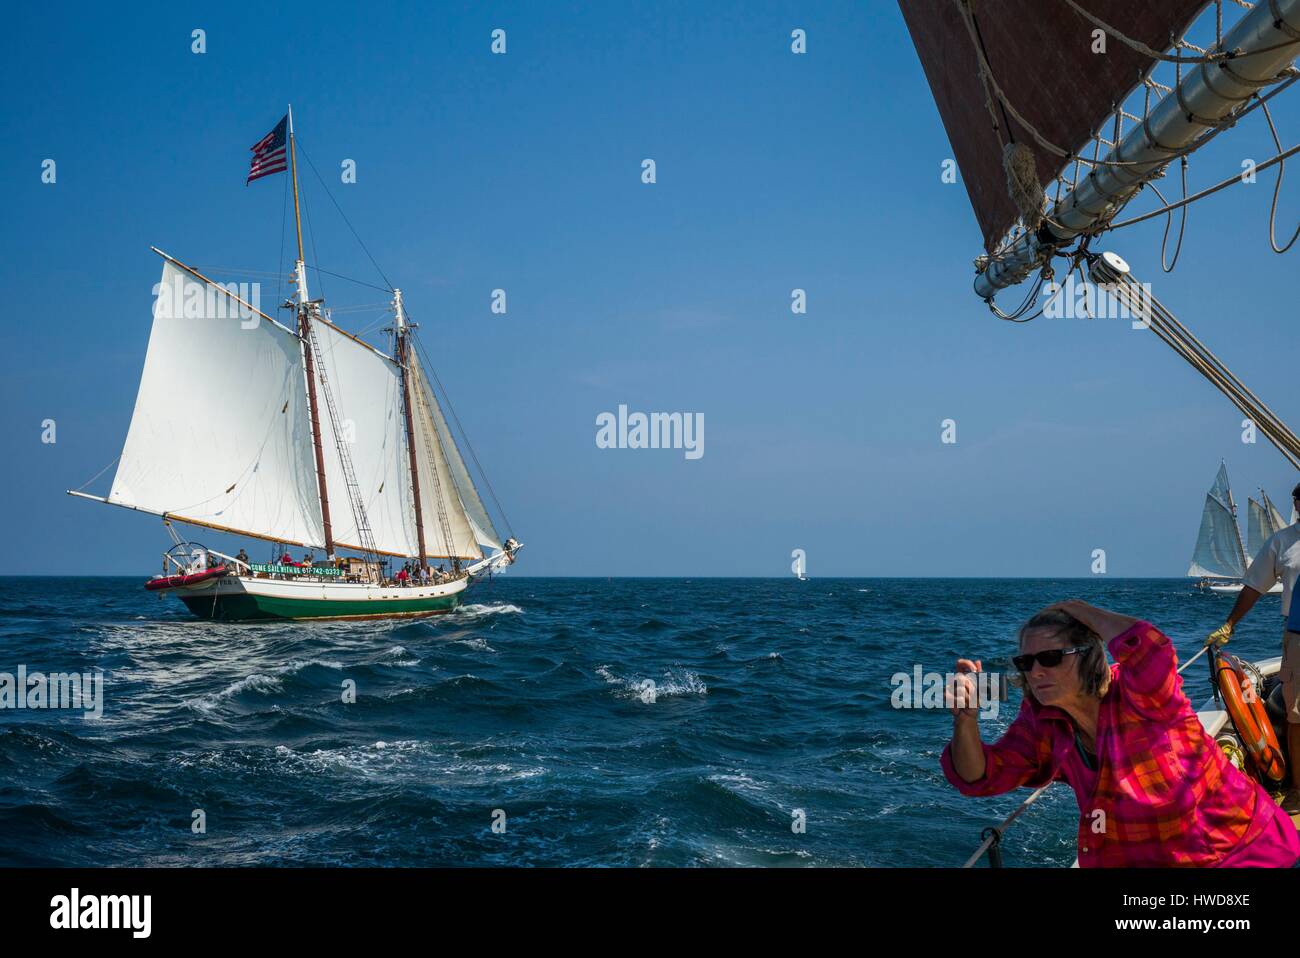 United States, Massachusetts, Cape Ann, Gloucester, America's Oldest Seaport, Annual Schooner Festival Stock Photo